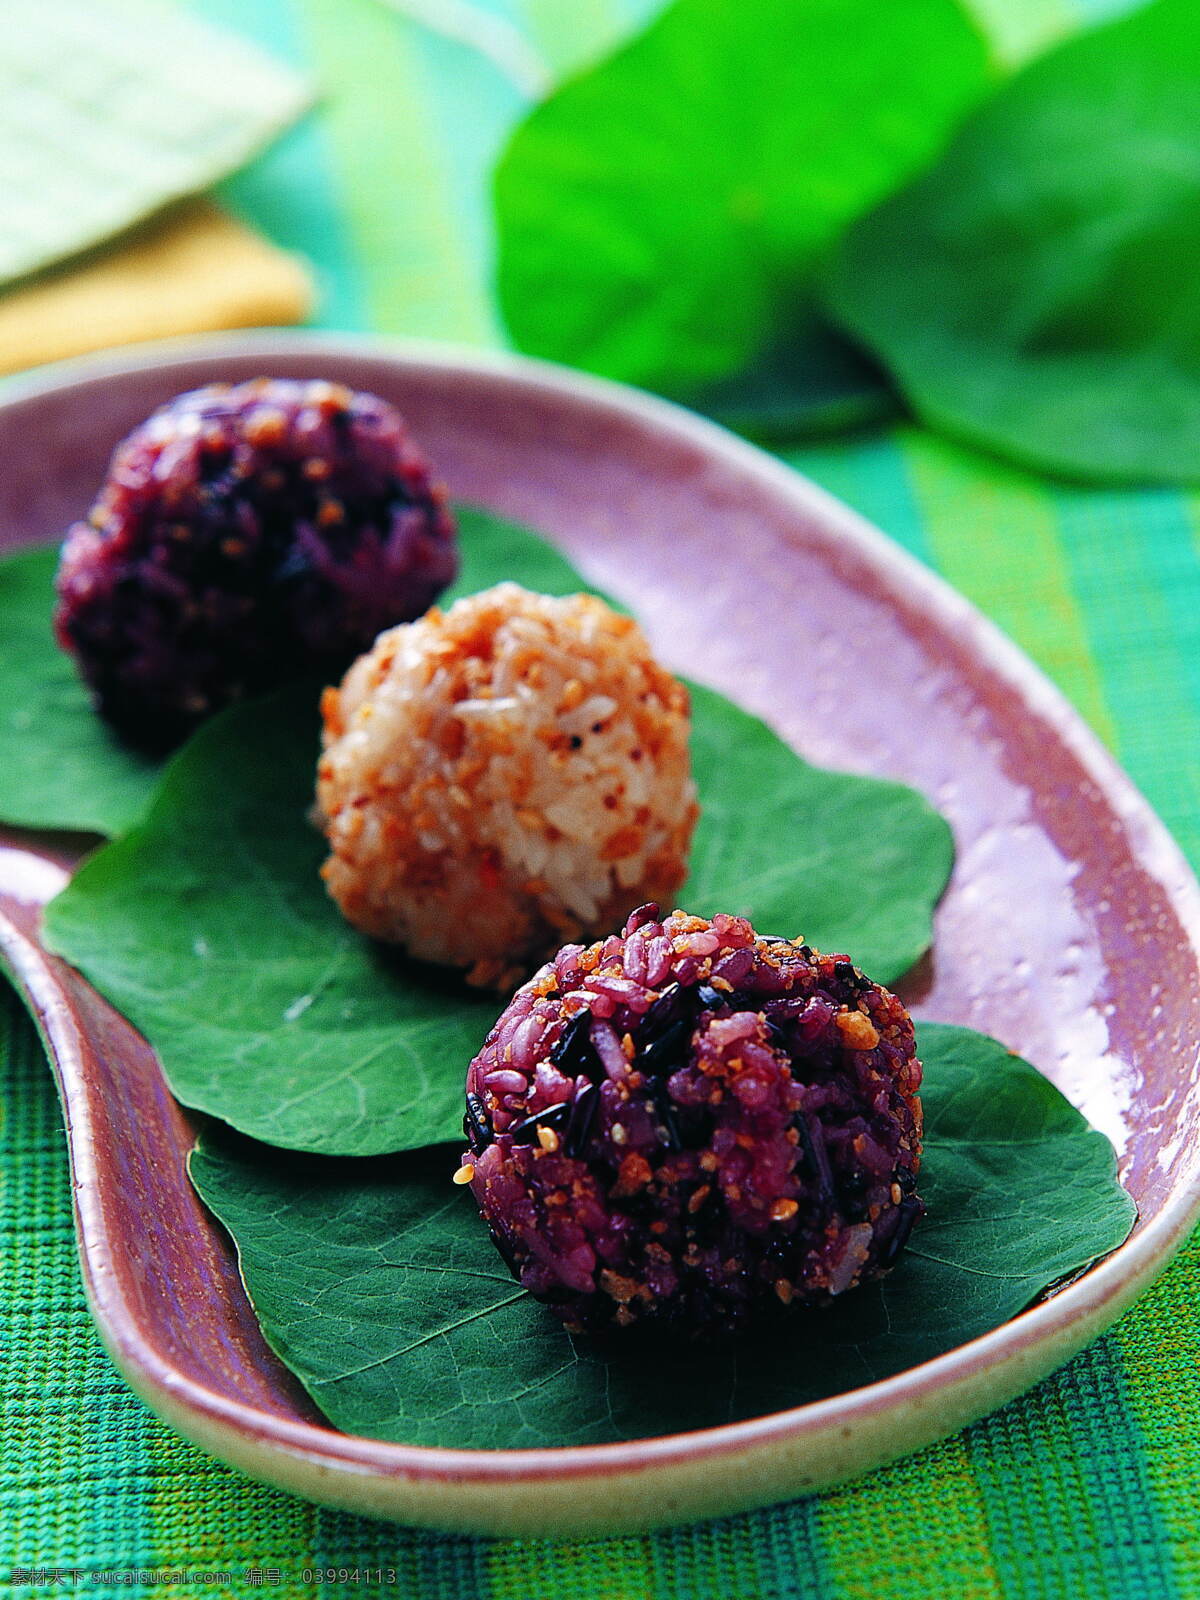 紫薯饭团 南瓜饭团 美食 健康 营养 餐饮美食 传统美食